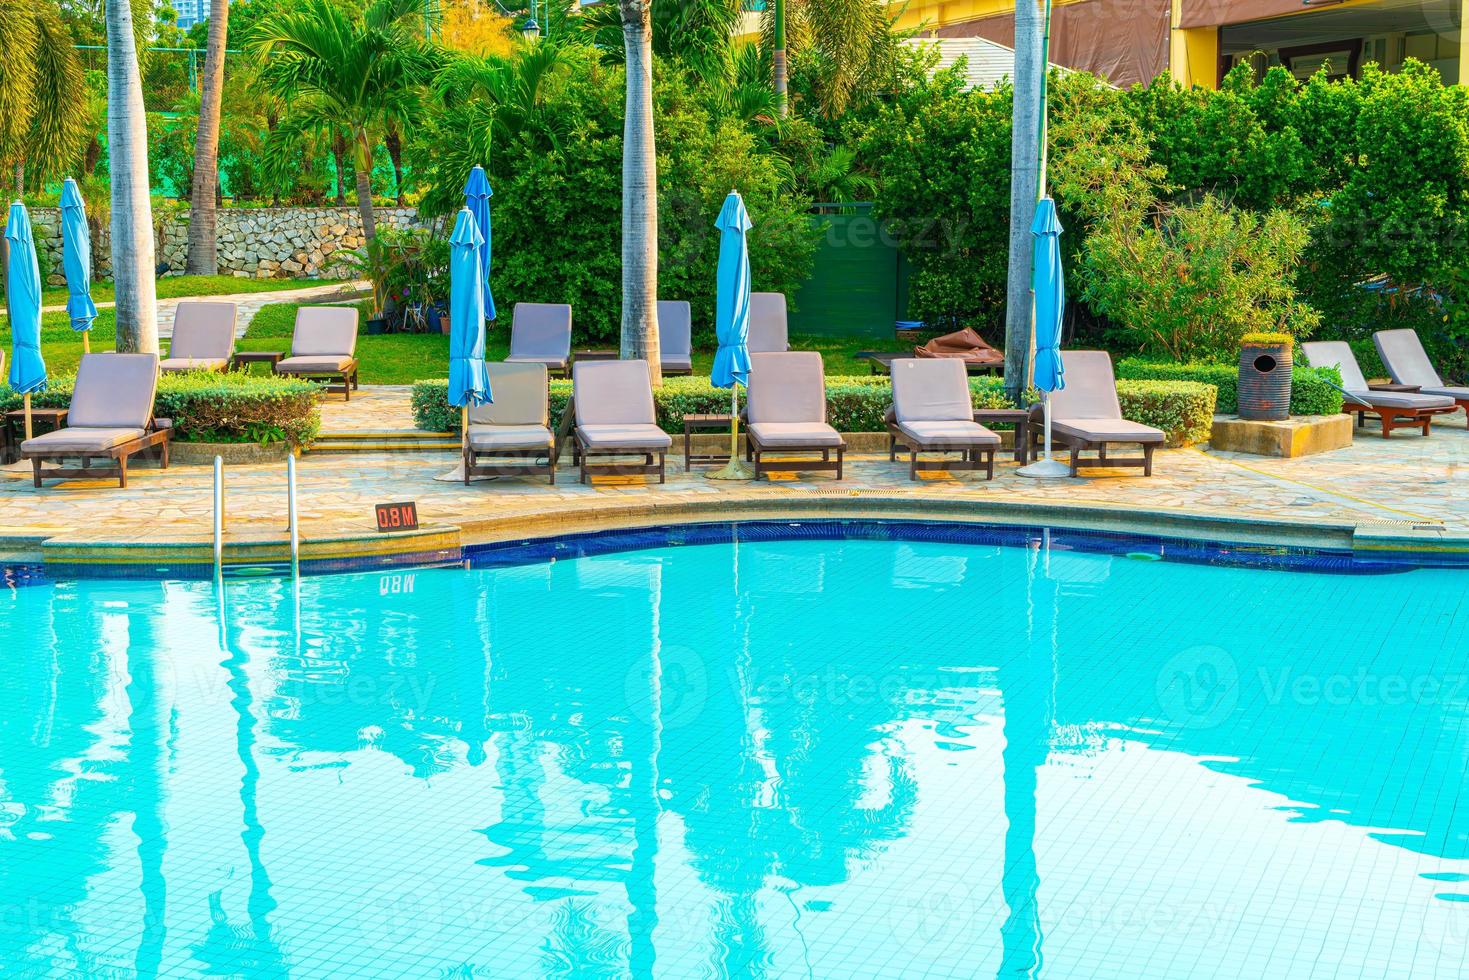 Liegepools und Sonnenschirme rund um den Swimmingpool mit Kokospalmen - Urlaubs- und Urlaubskonzept foto